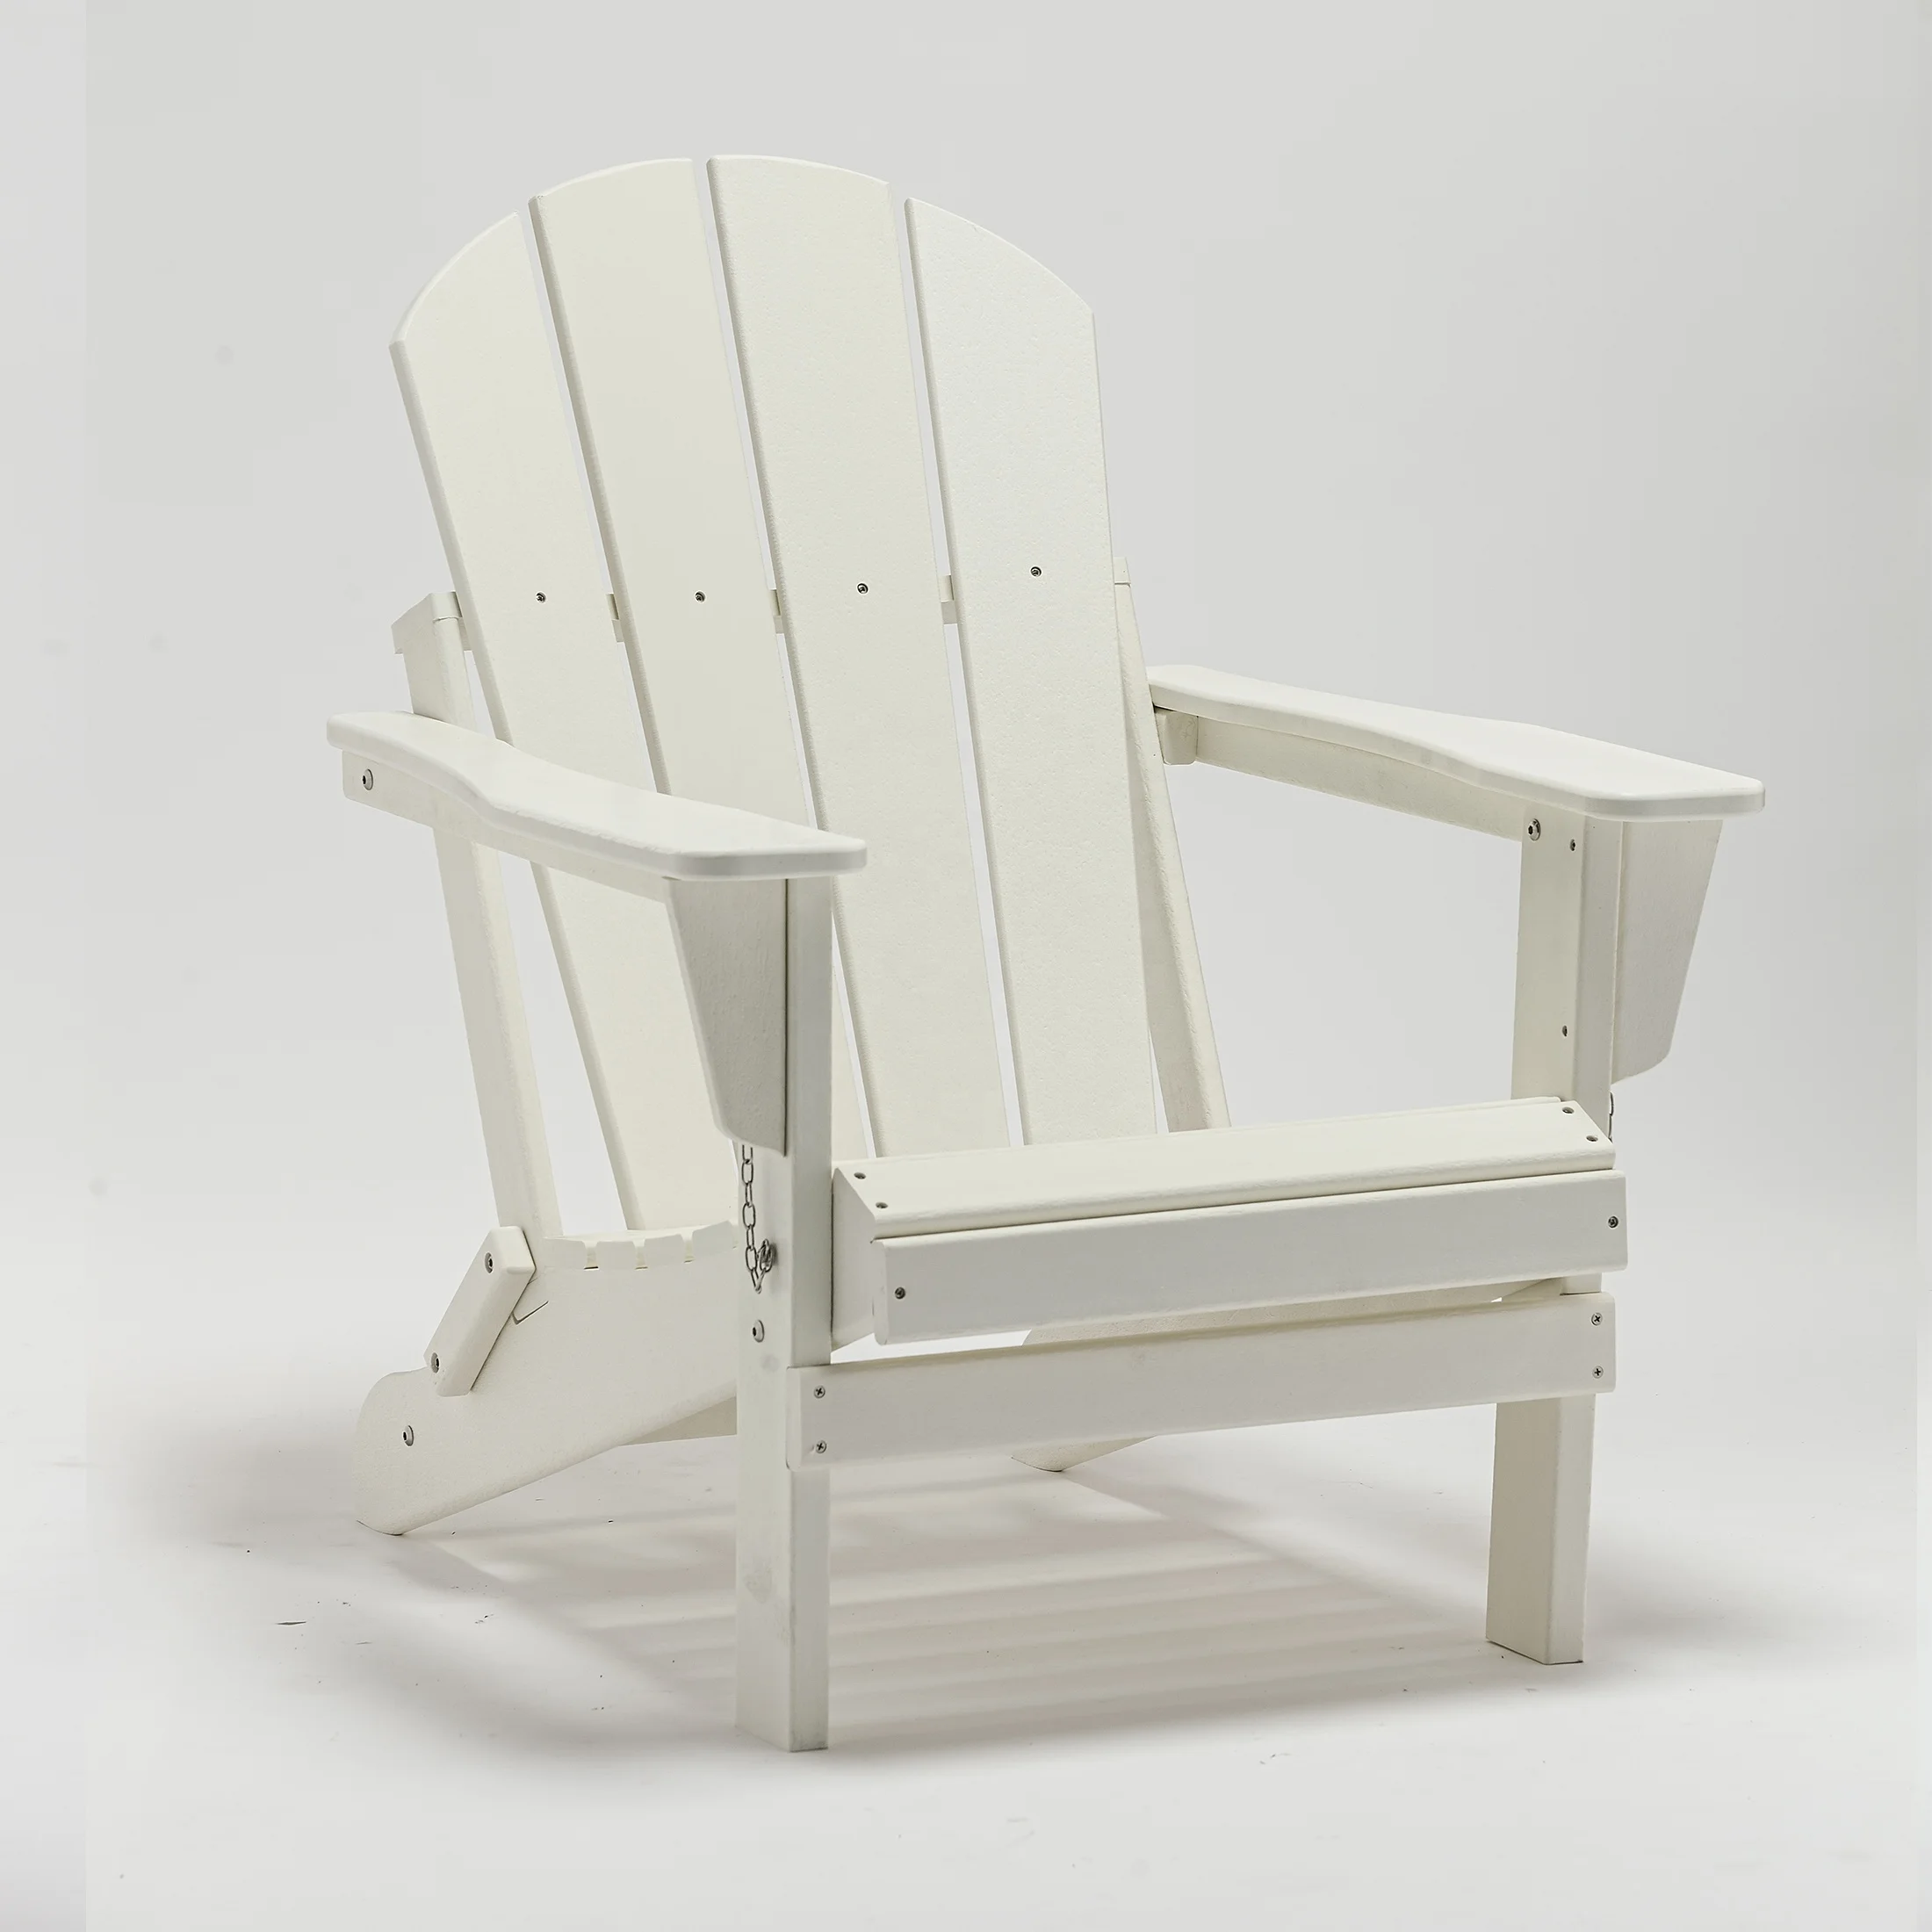 ビーチチェアとガーデンチェア21 Hdpeプラスチック折りたたみアディロンダックチェア Buy 折りたたみアディロンダック椅子 ホワイトガーデンプラスチック椅子 折りたたみリクライニングビーチチェア Product On Alibaba Com